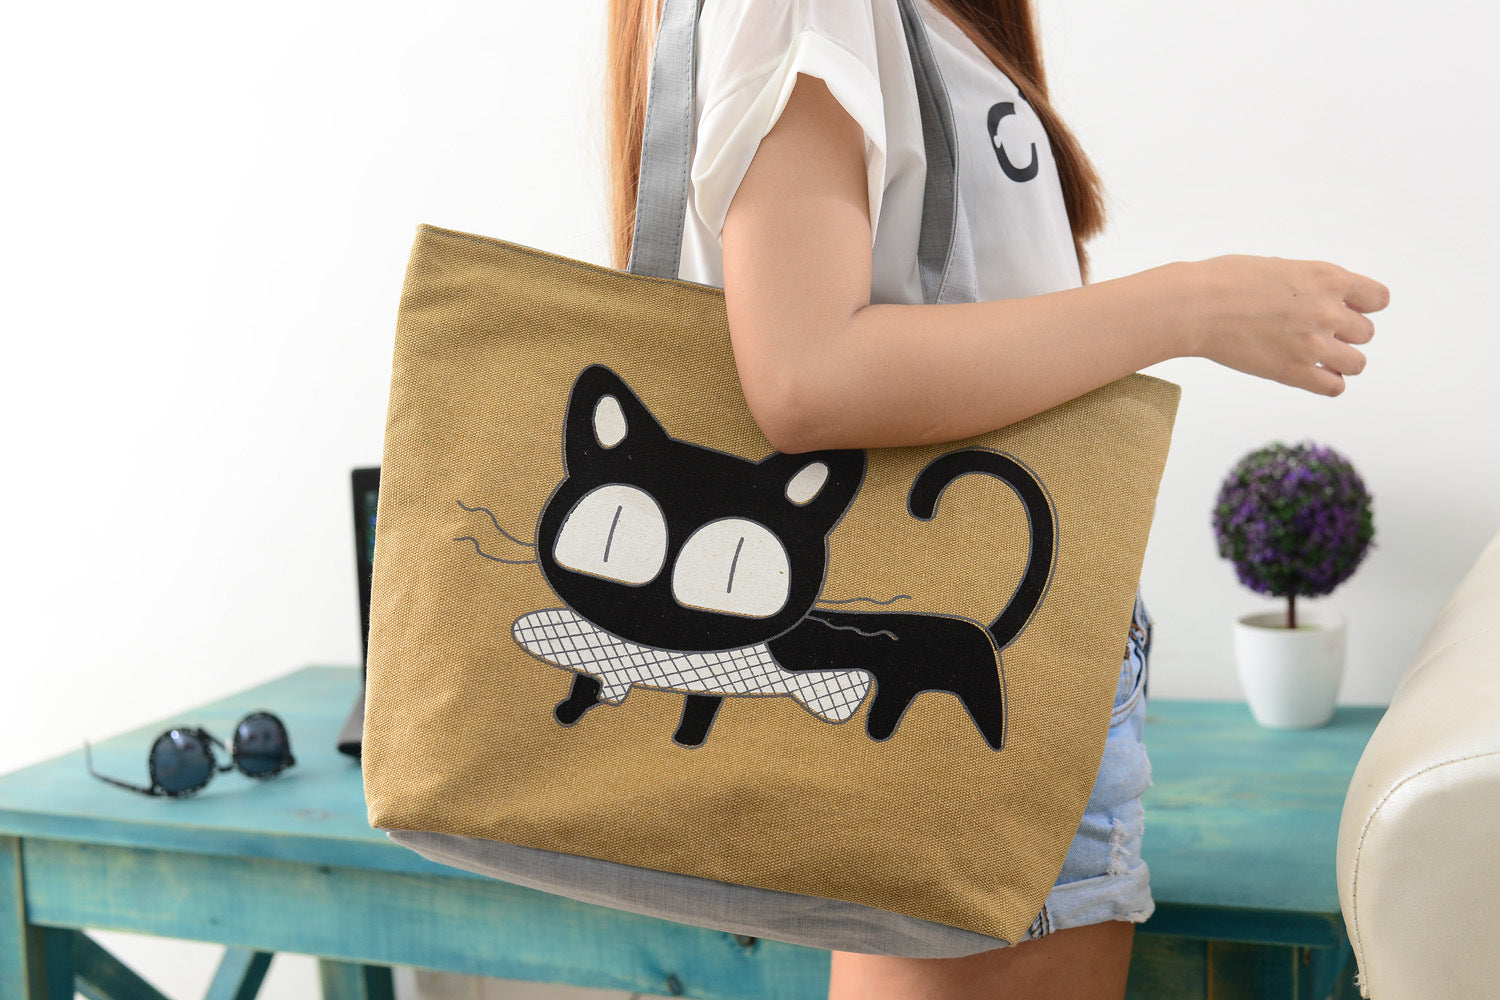 Cat Canvas Bag